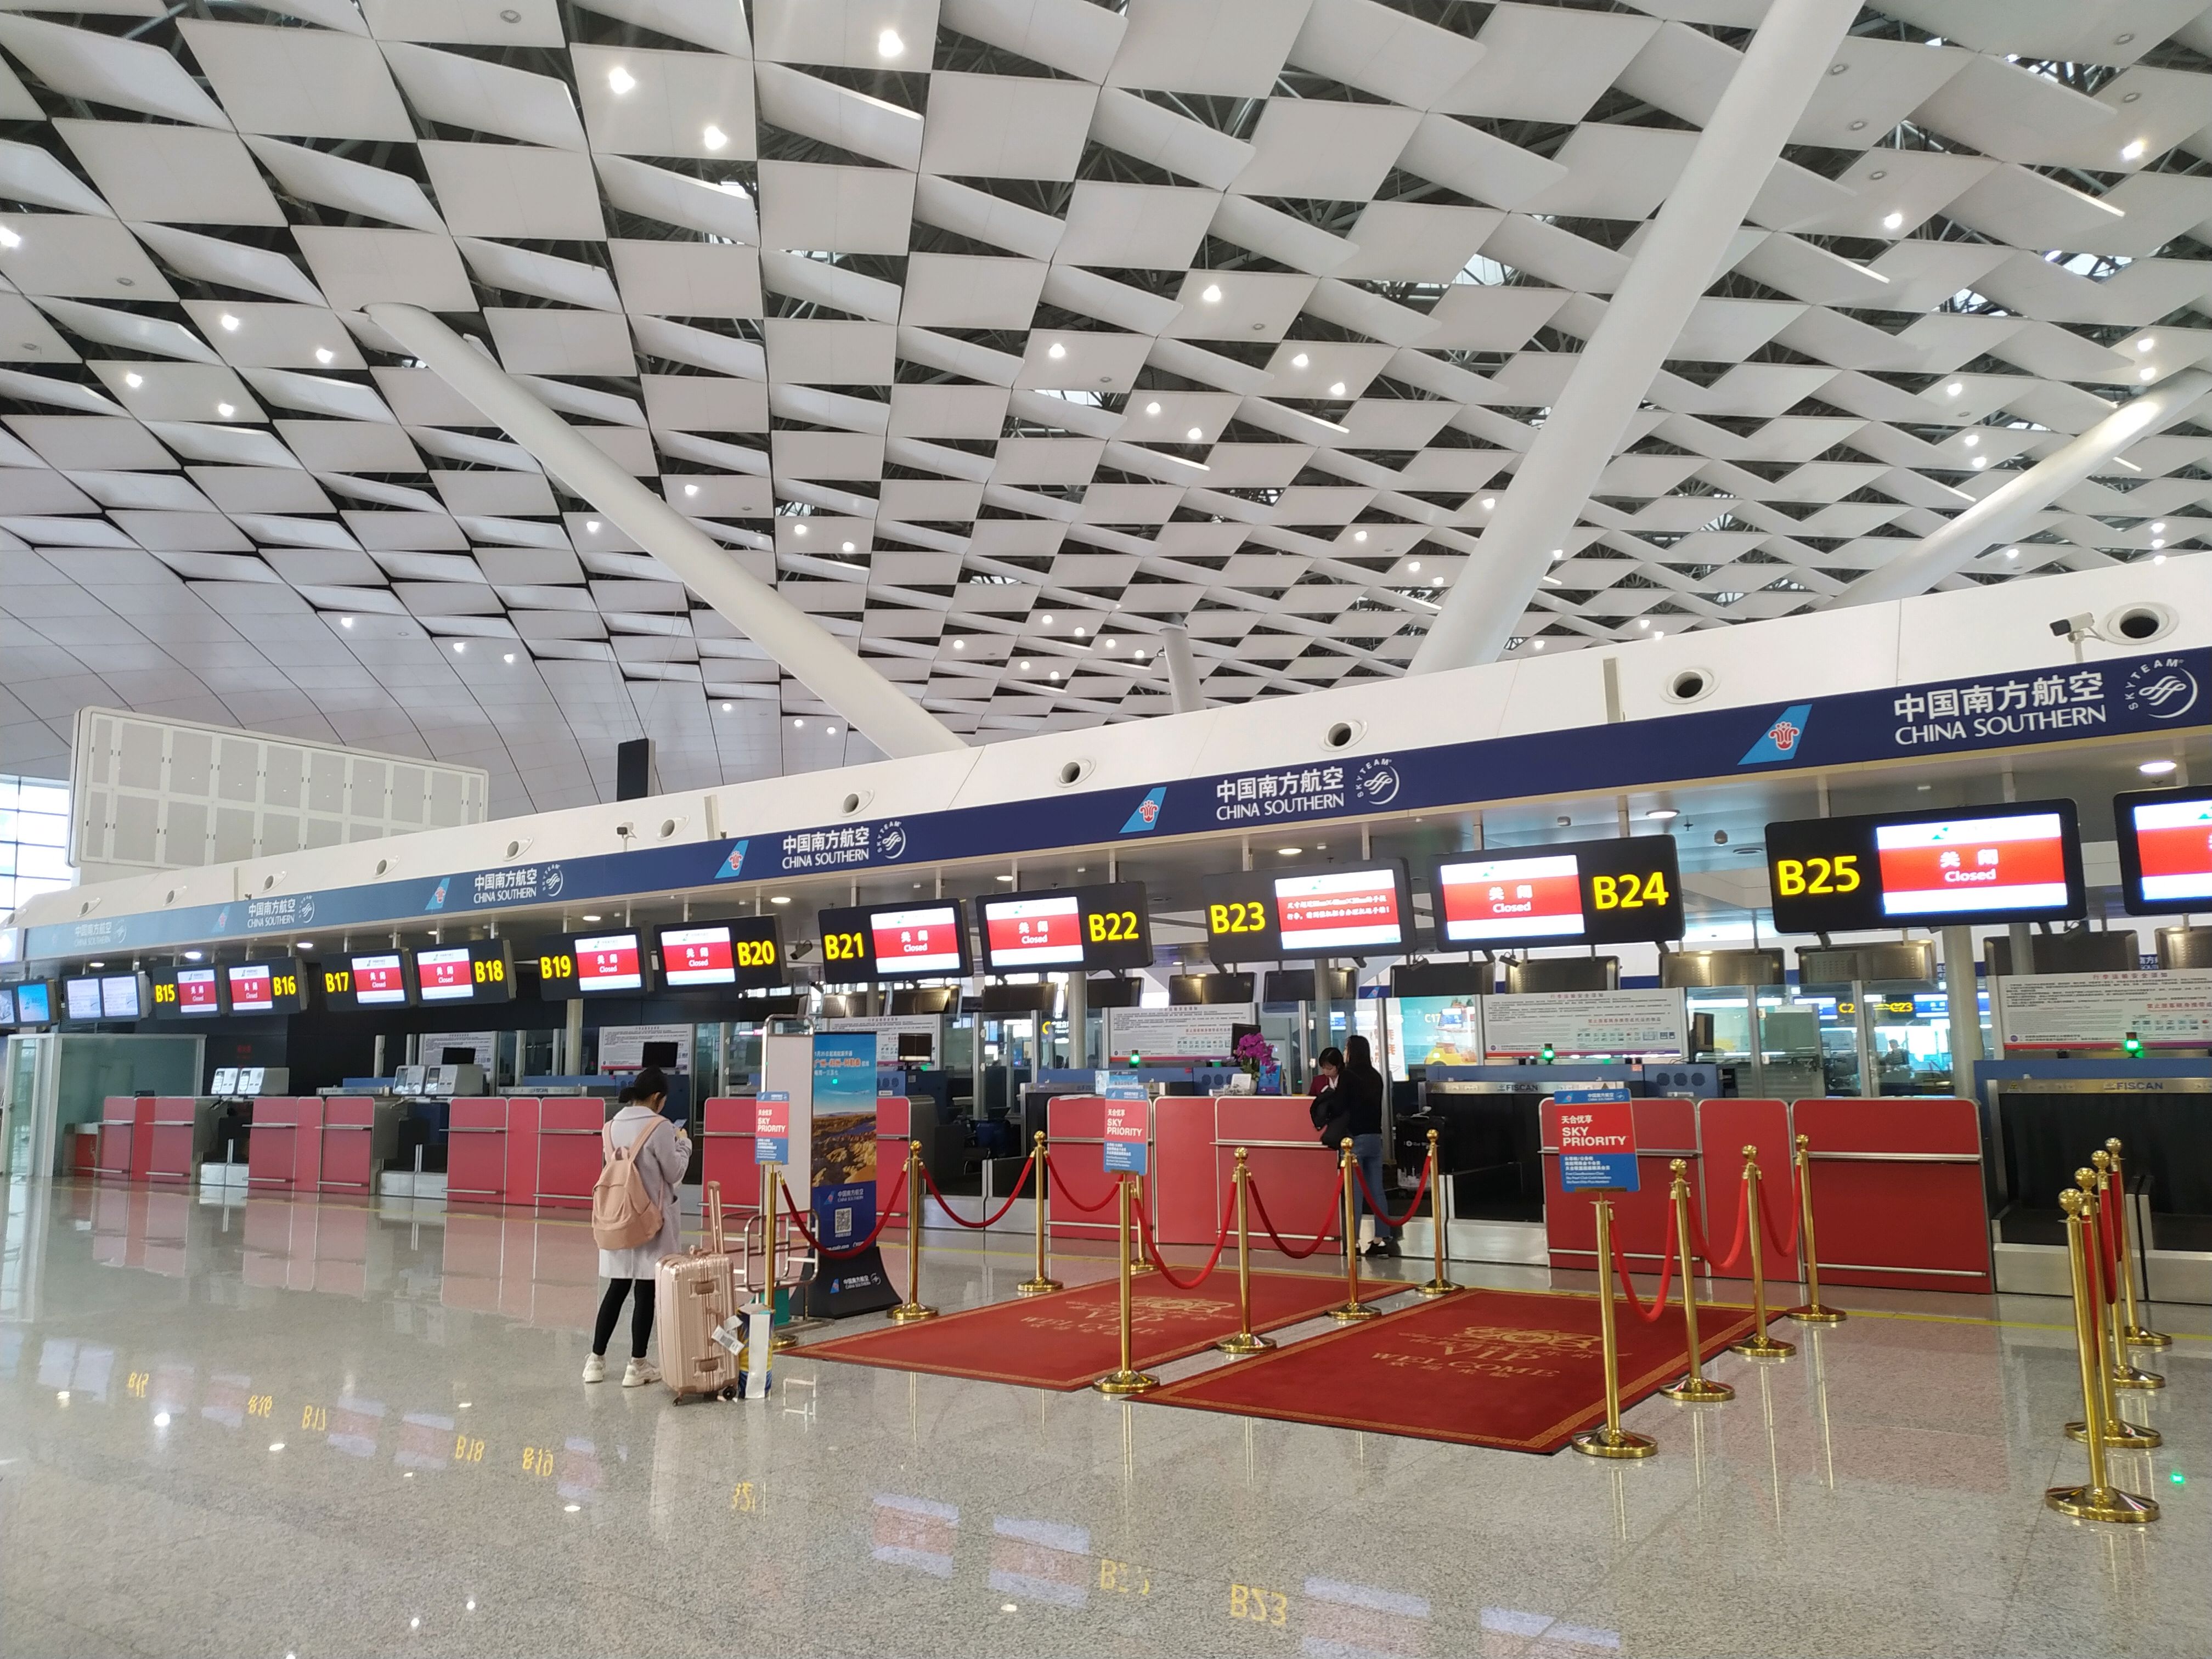 第一次去郑州新郑国际机场原来这么大,真是高端大气!